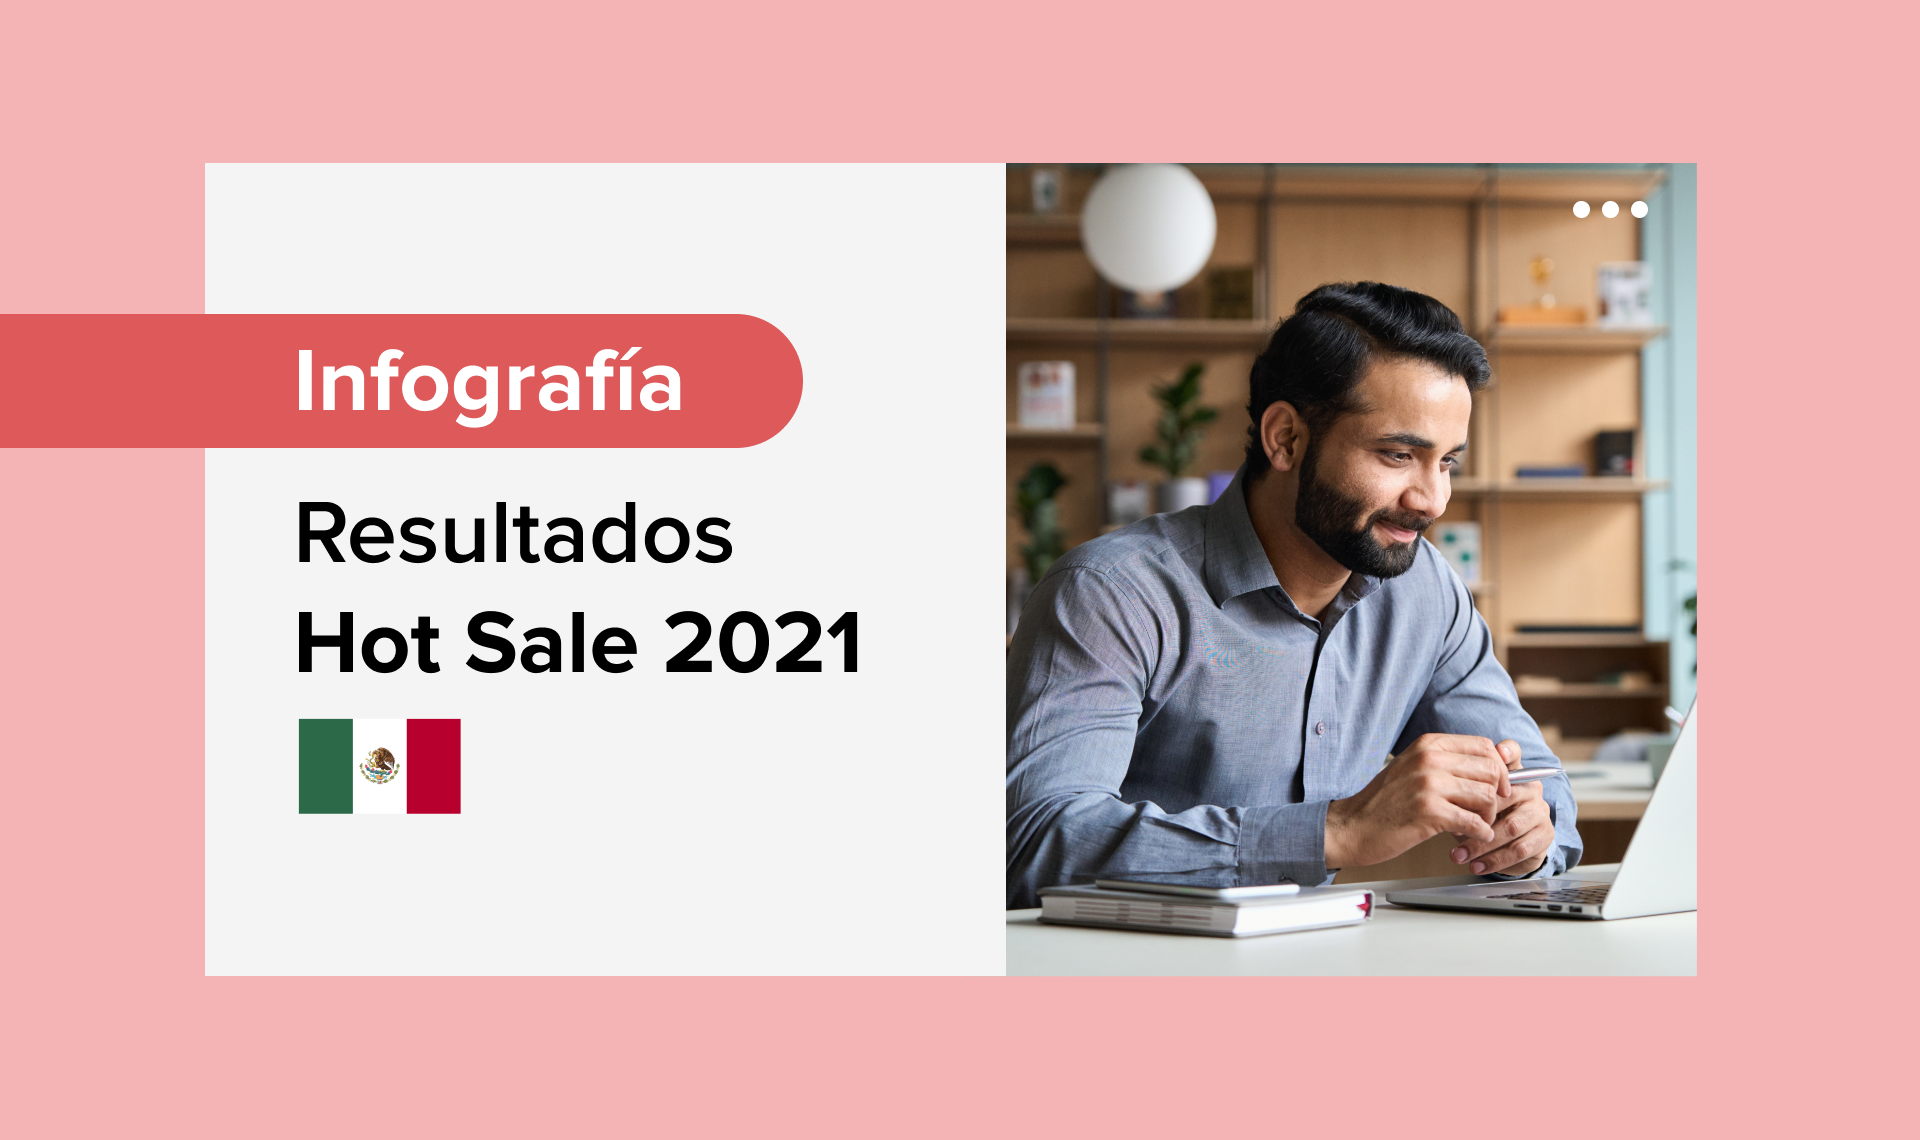 Hot Sale México: récord de facturación en 2021